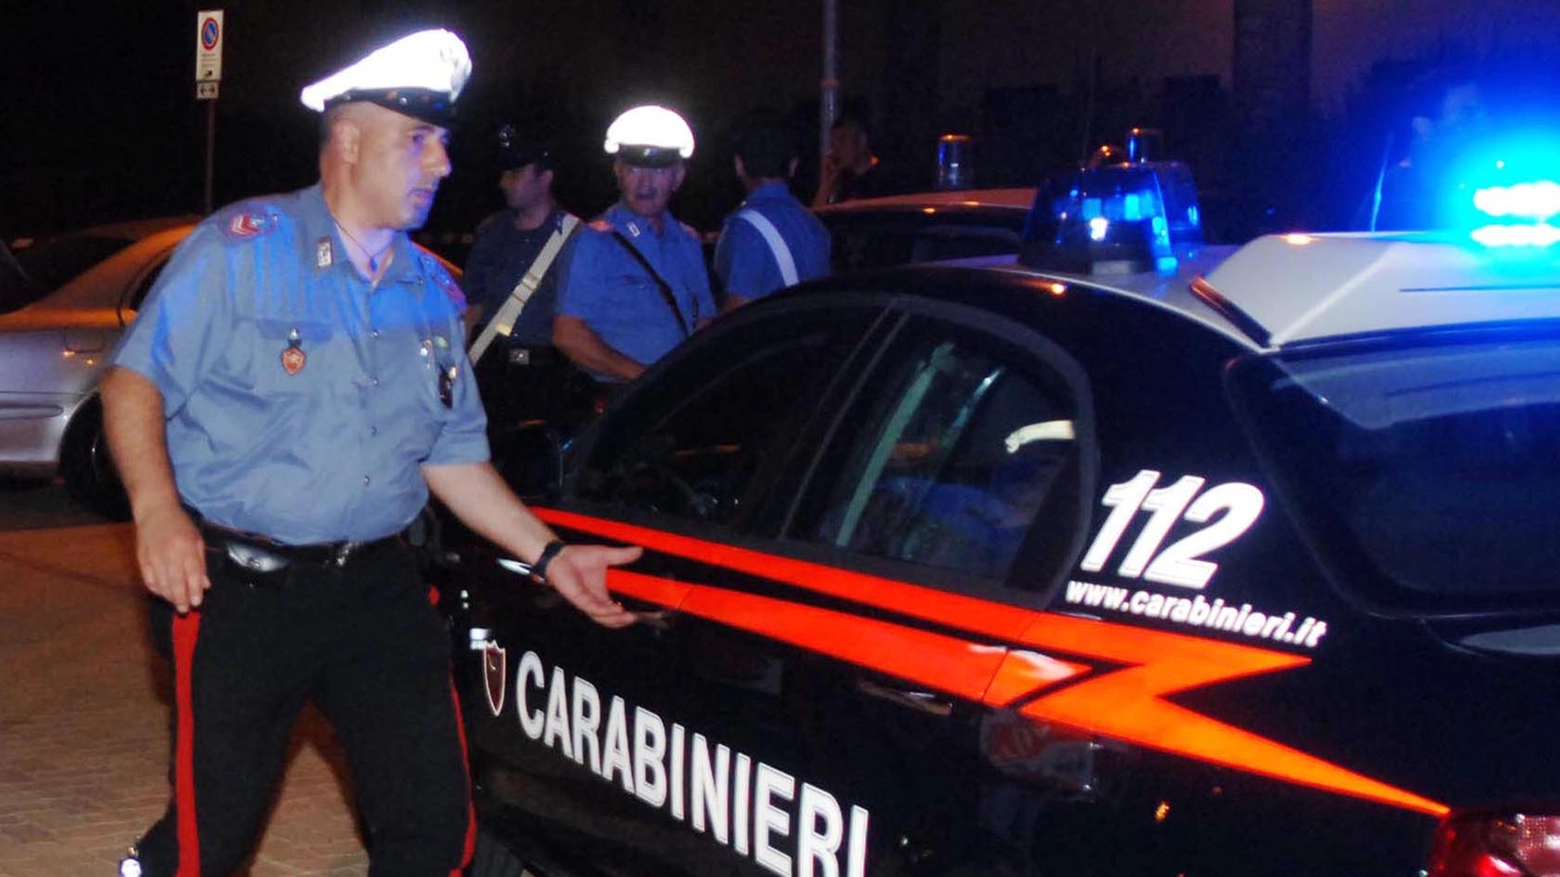 Investito dall'amico a Pinarella, sul posto i carabinieri (Foto di repertorio Newpress)